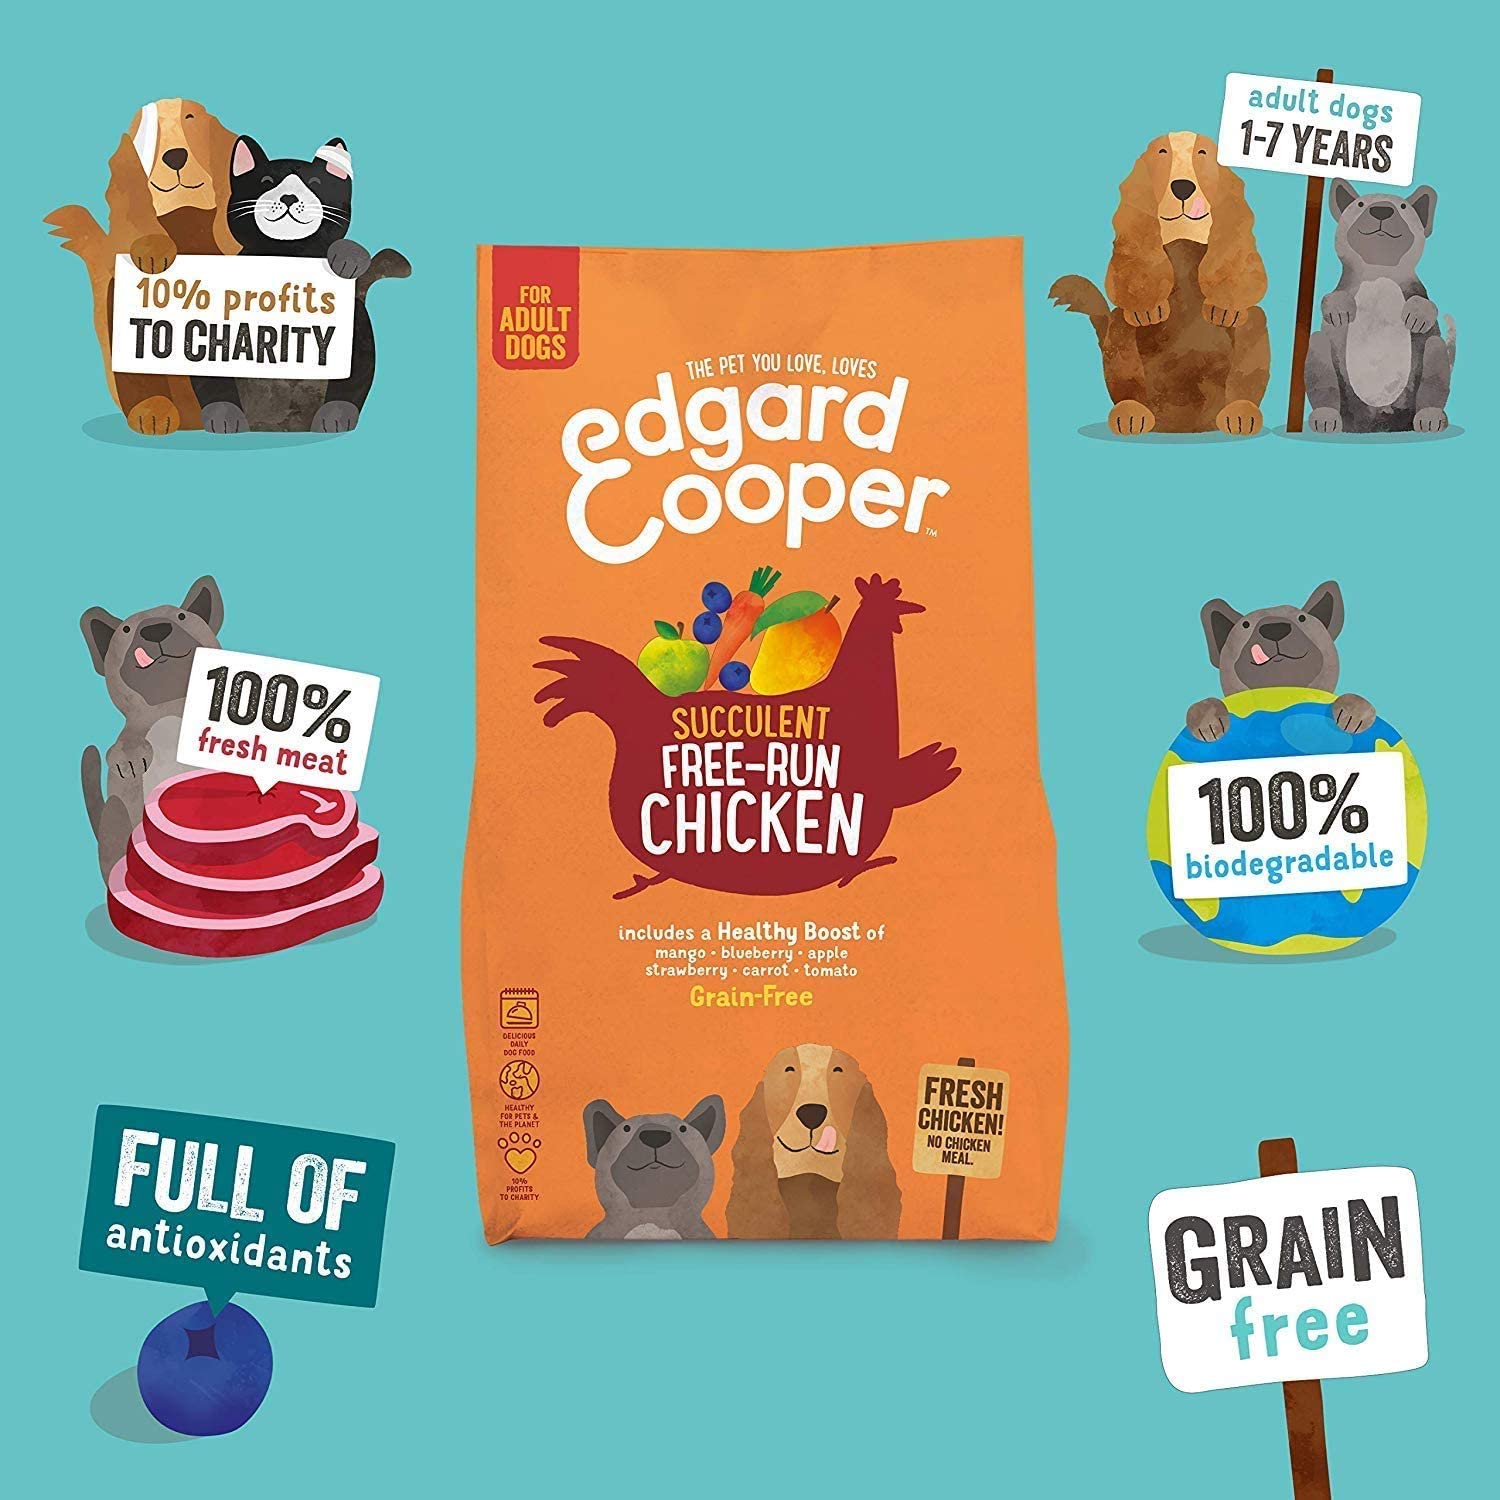  Edgard & Cooper pienso para perros adultos sin cereales, comida natural con Pollo fresco de granja, 2.5kg. premium balanceada sin harinas de carne ni carnes sobreprocesadas cocinada a baja temperatura 